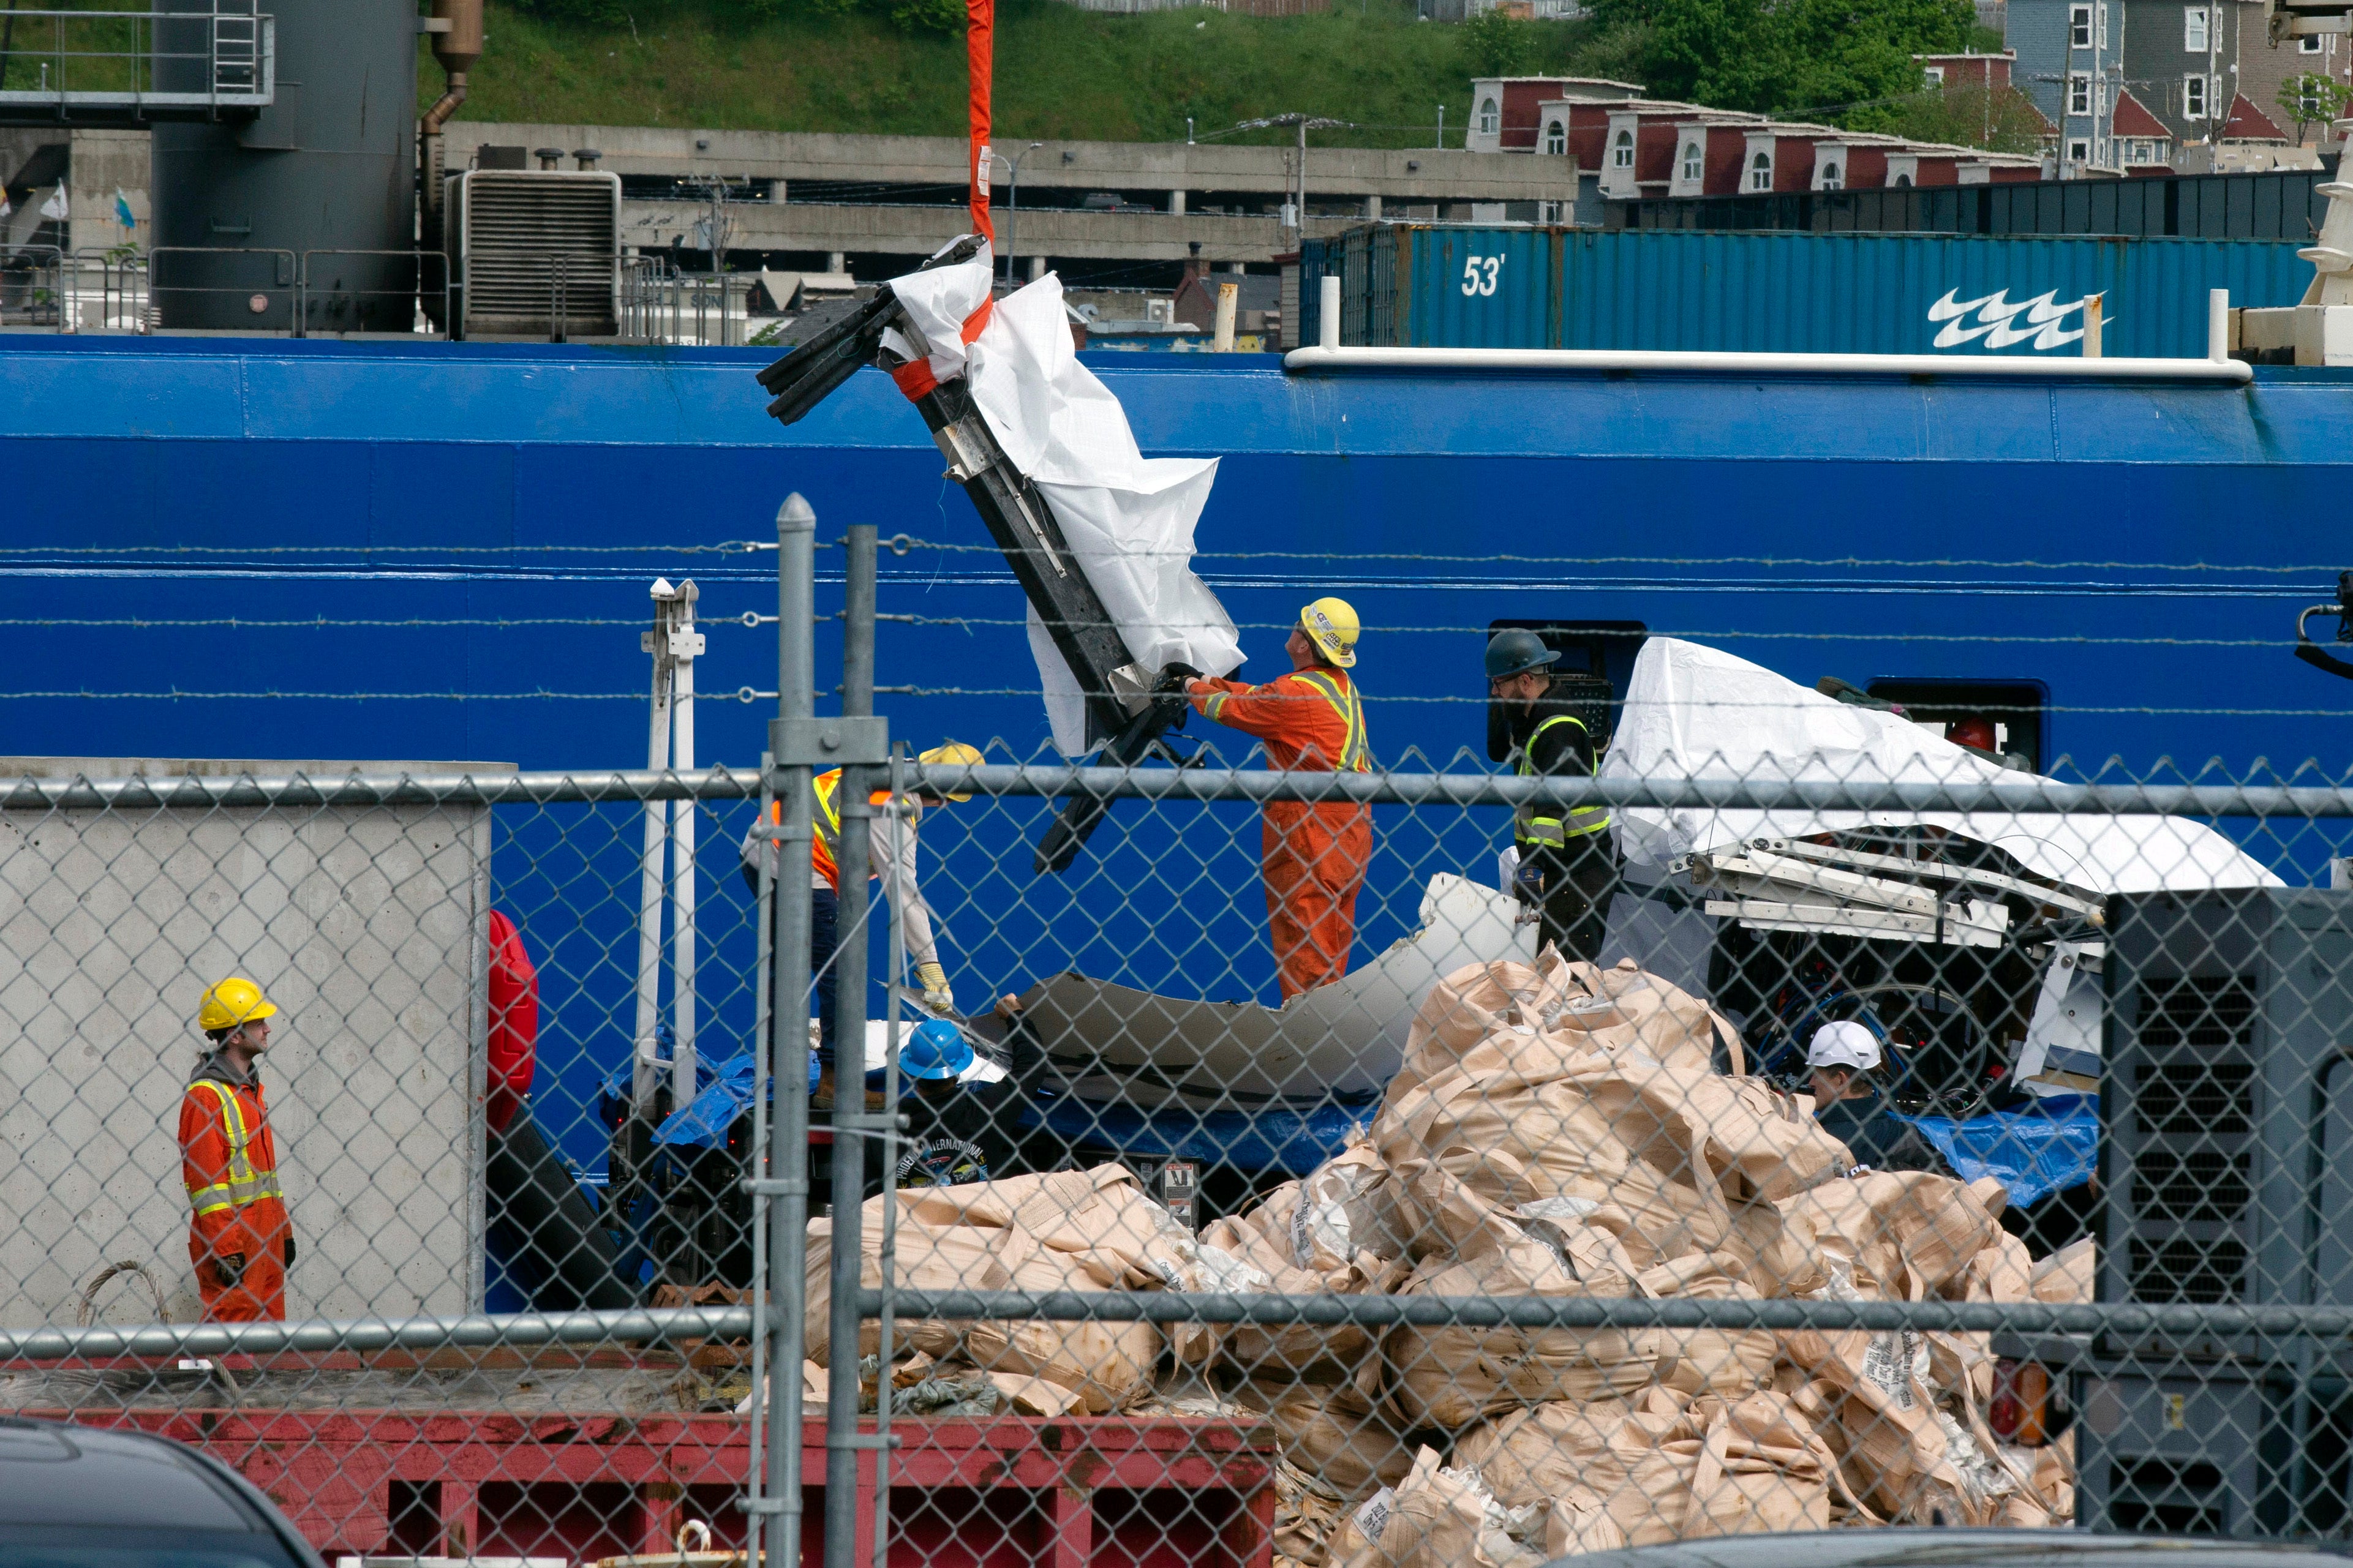 Fotos compartidas por la Associated Press muestran lo que parecen ser varias piezas cubiertas con lona blanca que se descargaron de los navíos estadounidenses Sycamore y Horizon Arctic en un puerto en St John’s, Newfoundland